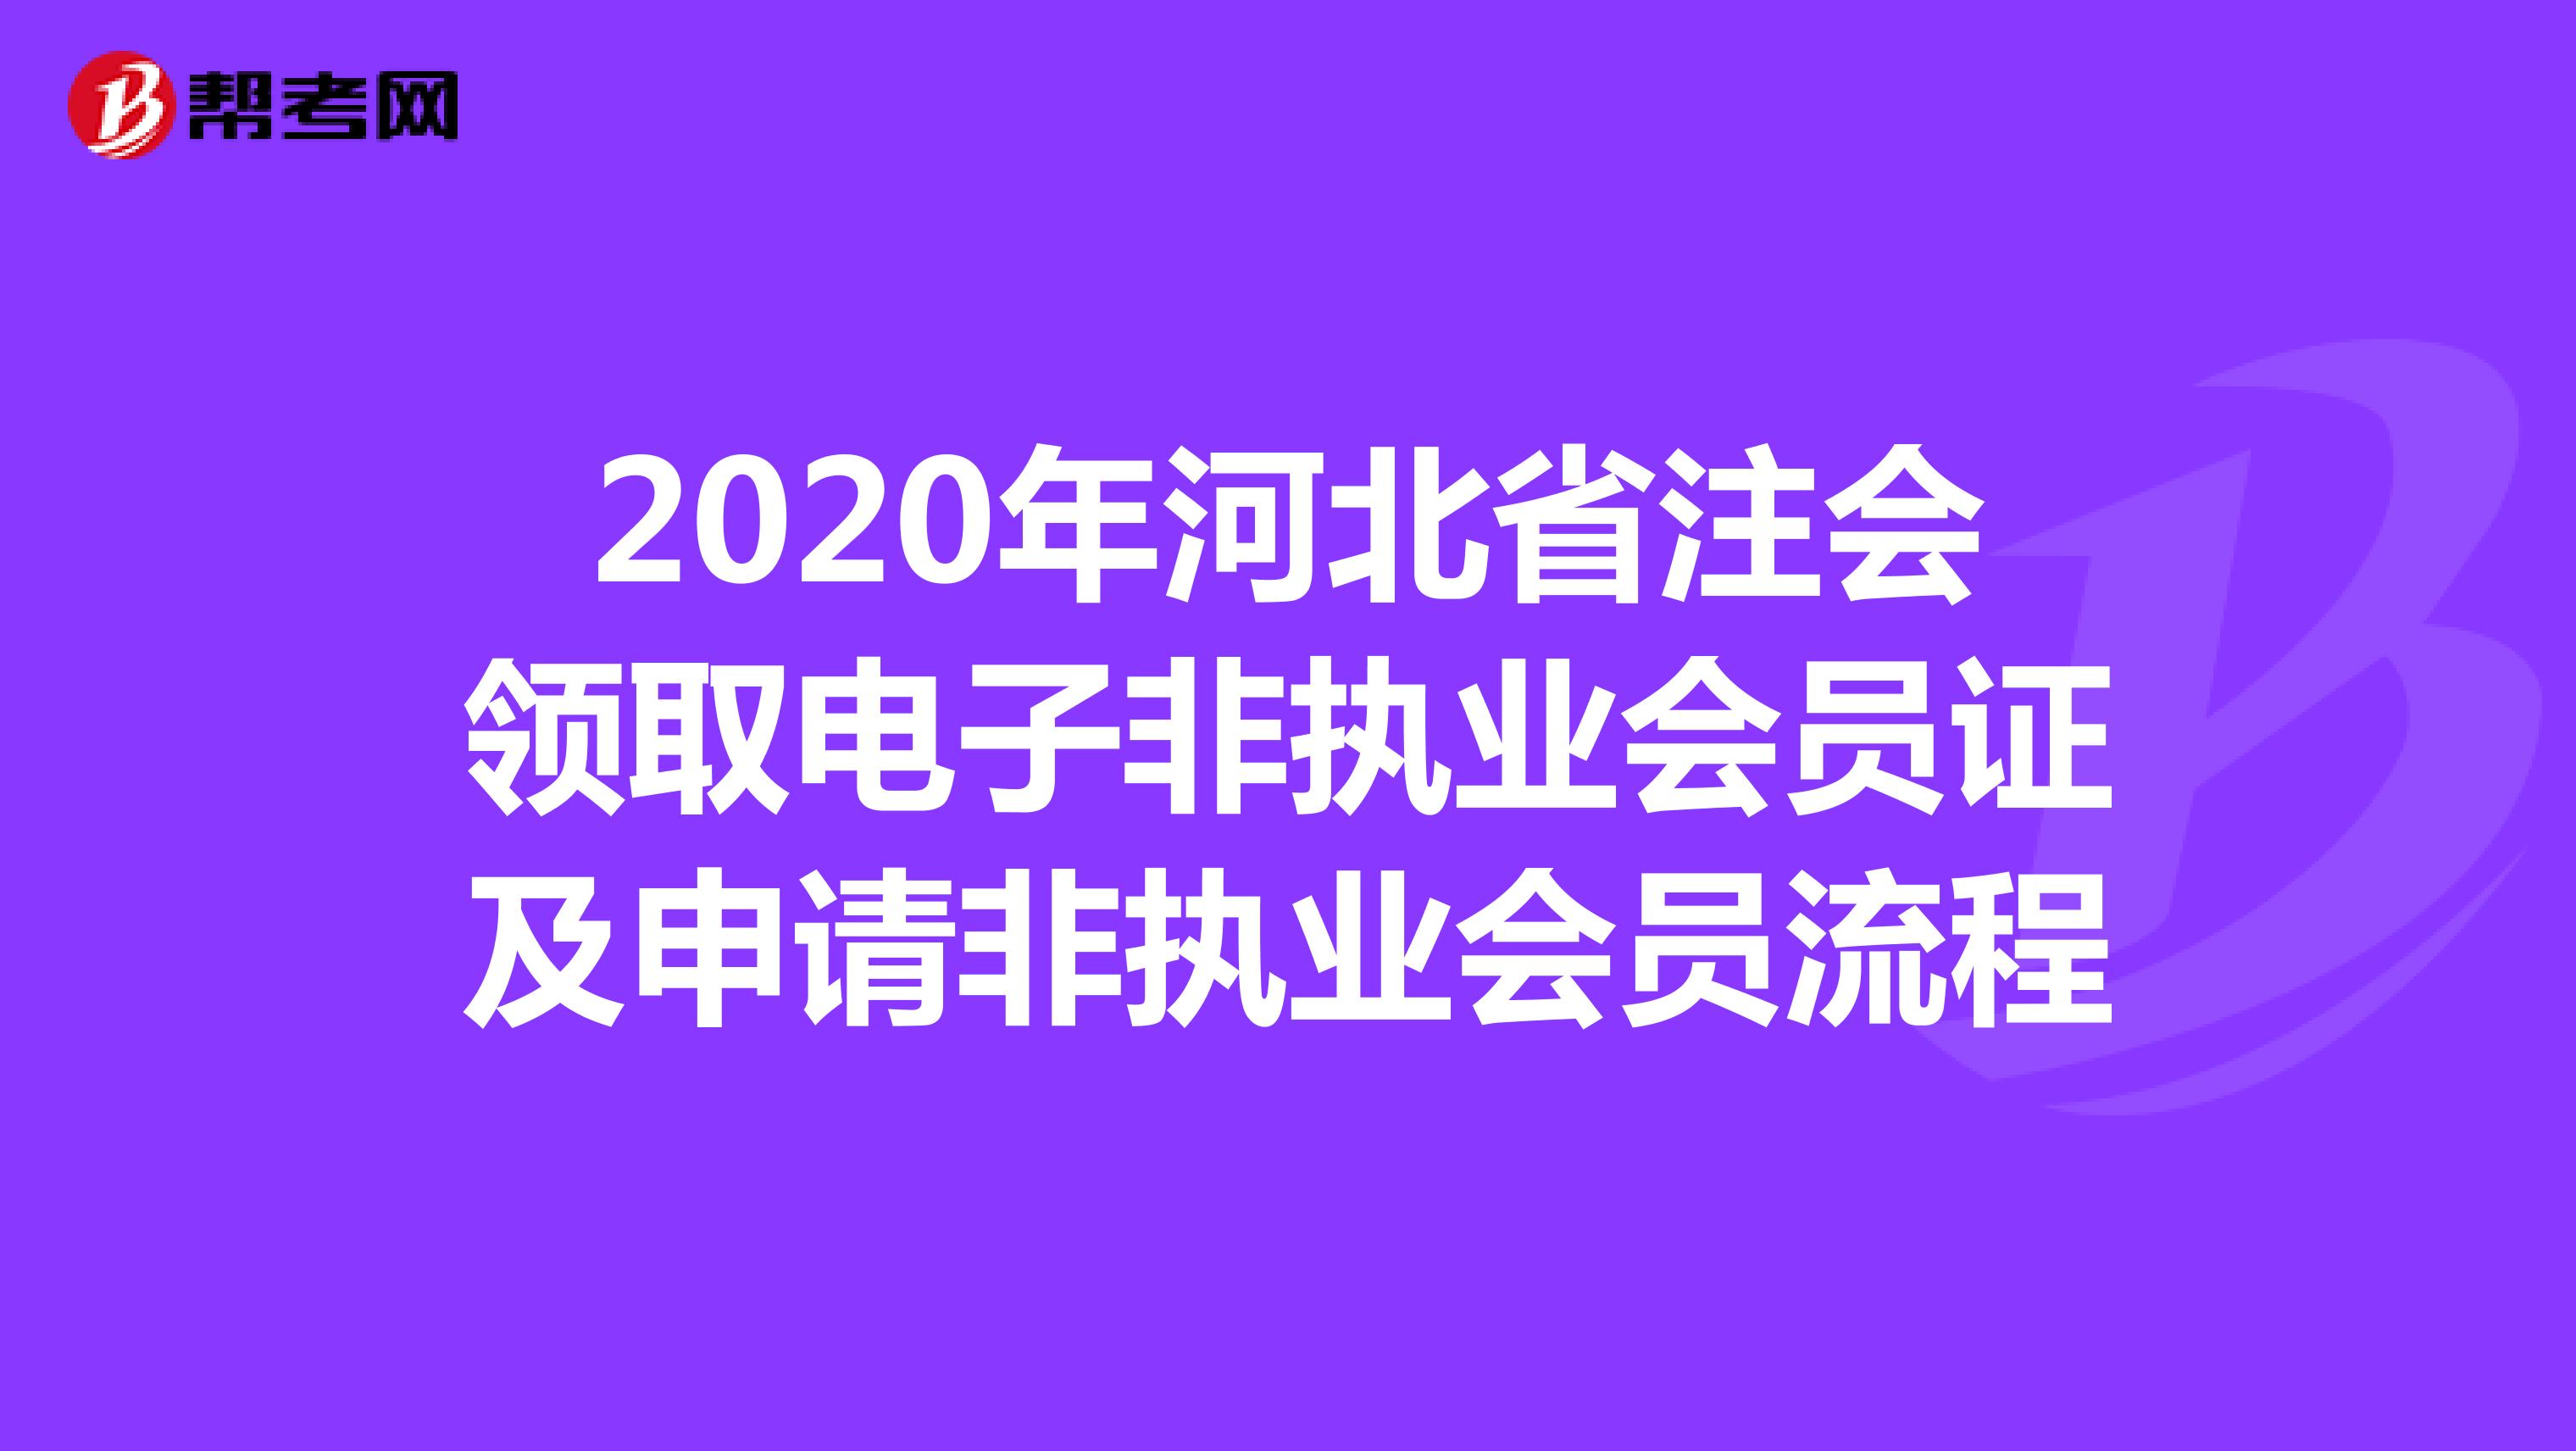 2020年河北省注会领取电子非执业会员证及申请非执业会员流程